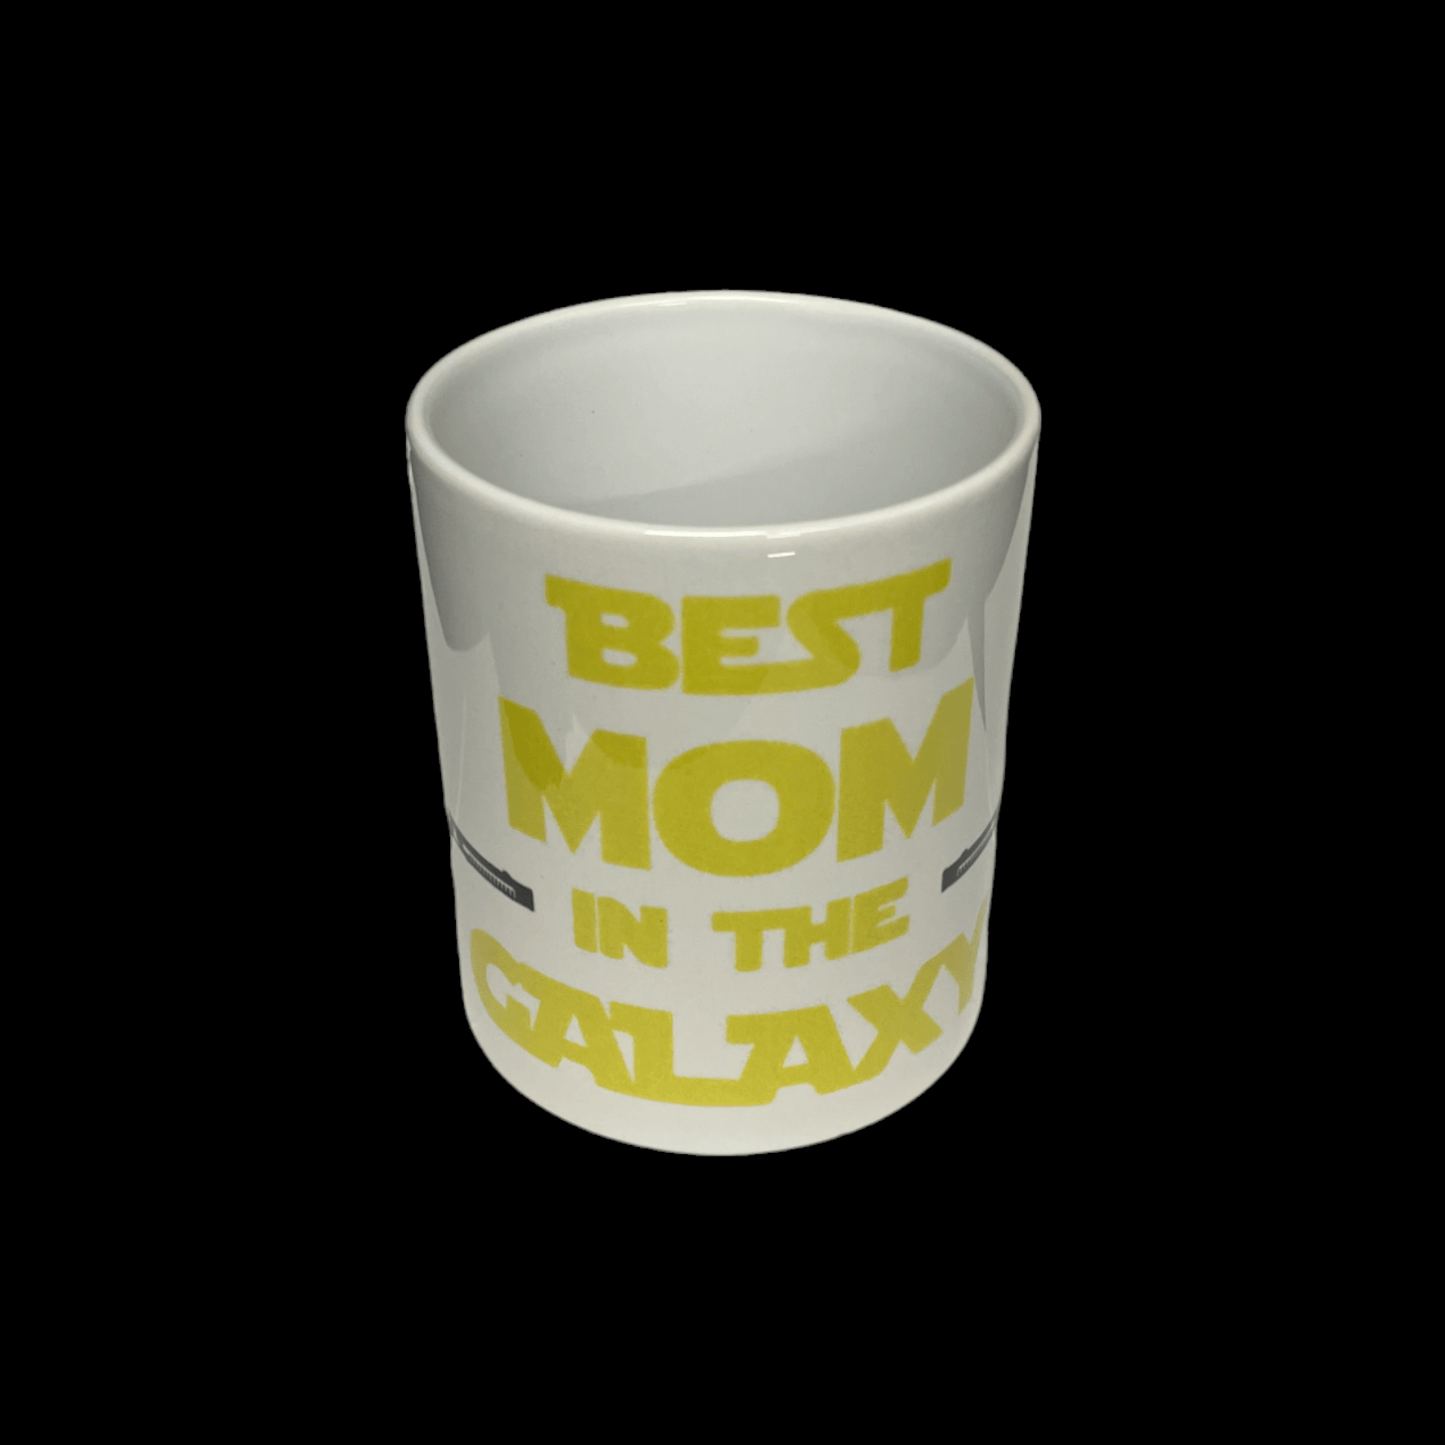 The Best Mom In The Galaxy Star Wars Mug